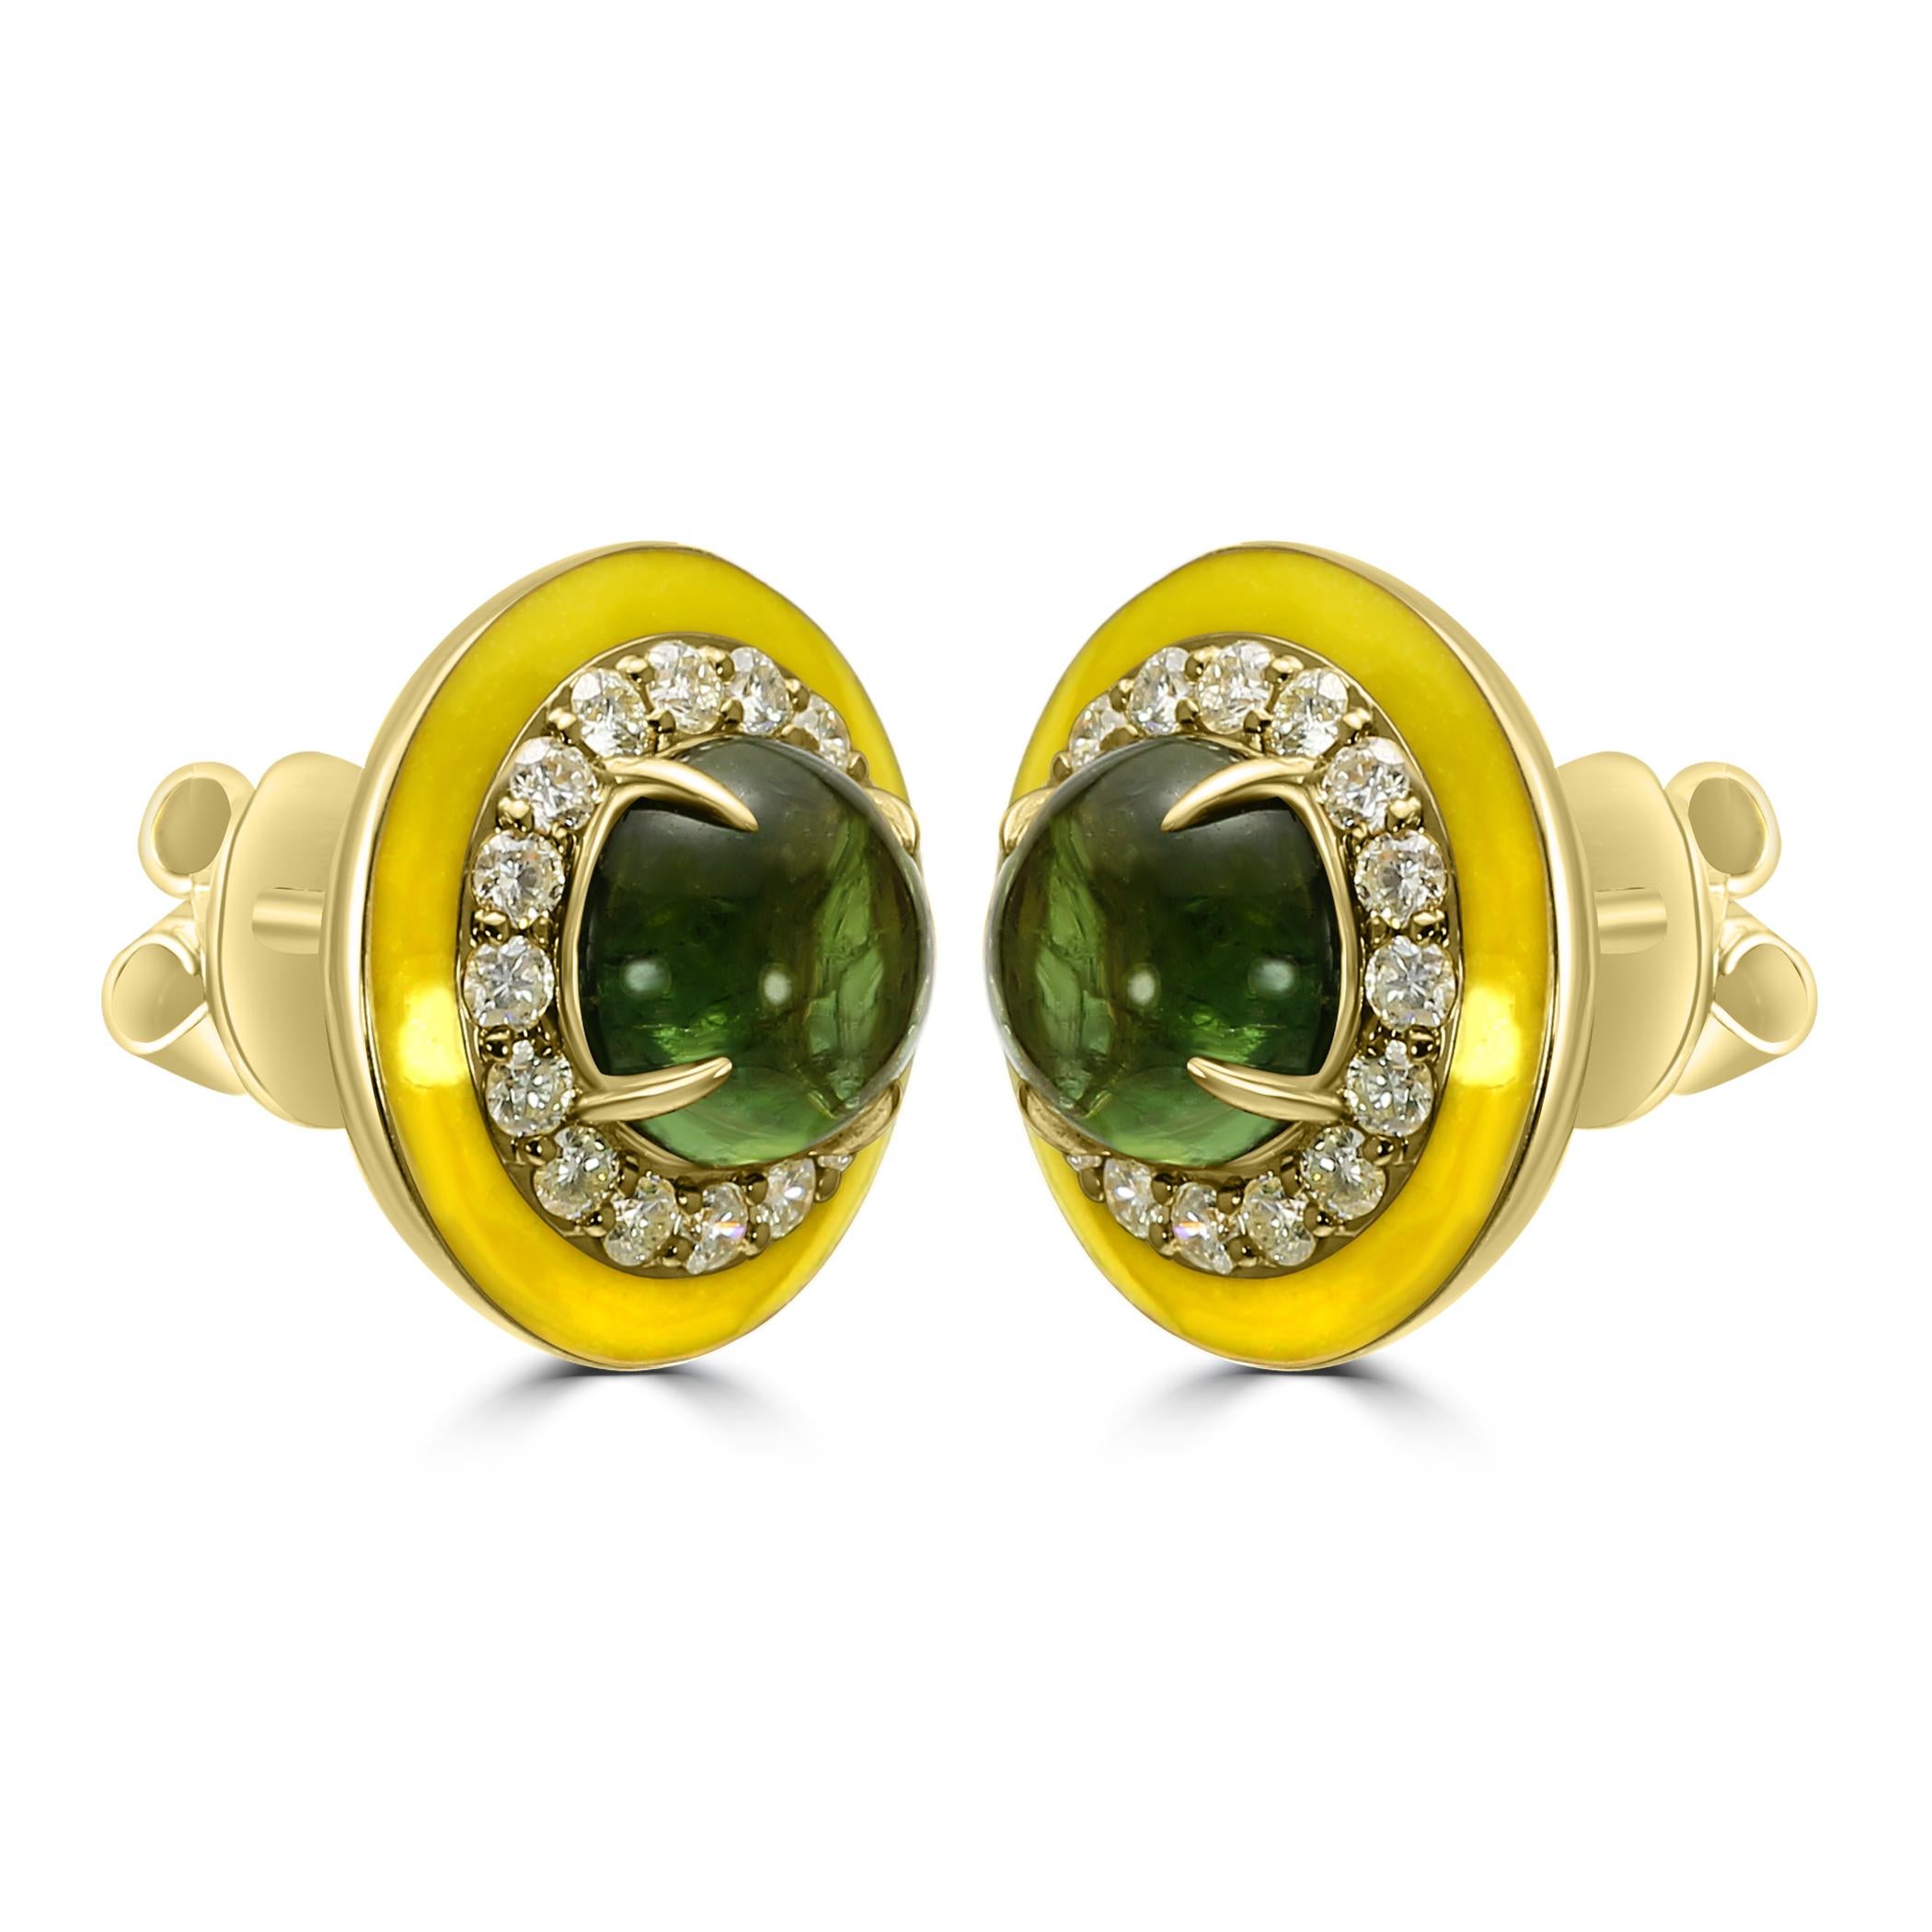 Tauchen Sie ein in die glamouröse Welt des Art Déco mit unseren Fashion Stud Art-Deco Earrings, einer atemberaubenden Mischung aus Vintage-inspiriertem Design und moderner Schönheit. 

Diese Ohrringe sind mit einem faszinierenden grünen Turmalin in